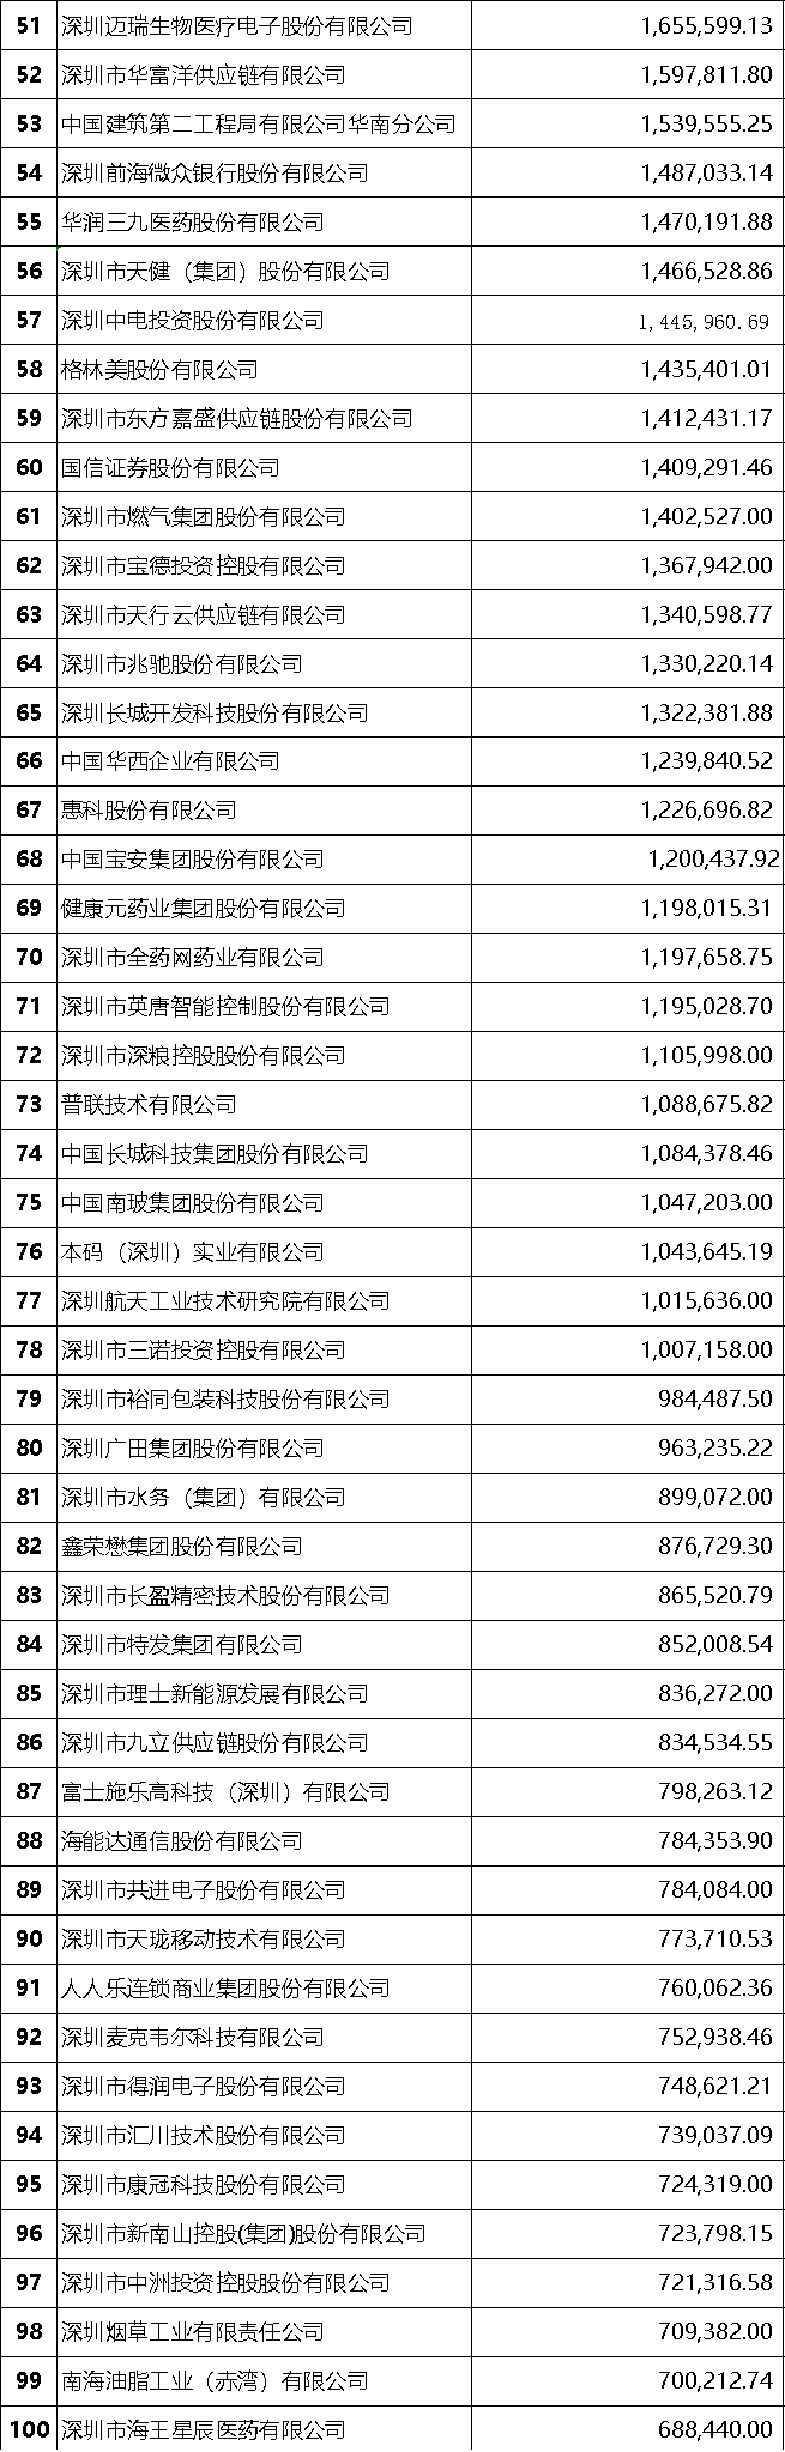 2020深圳500强企业榜单发布  2019年度总营业收入7.62万亿